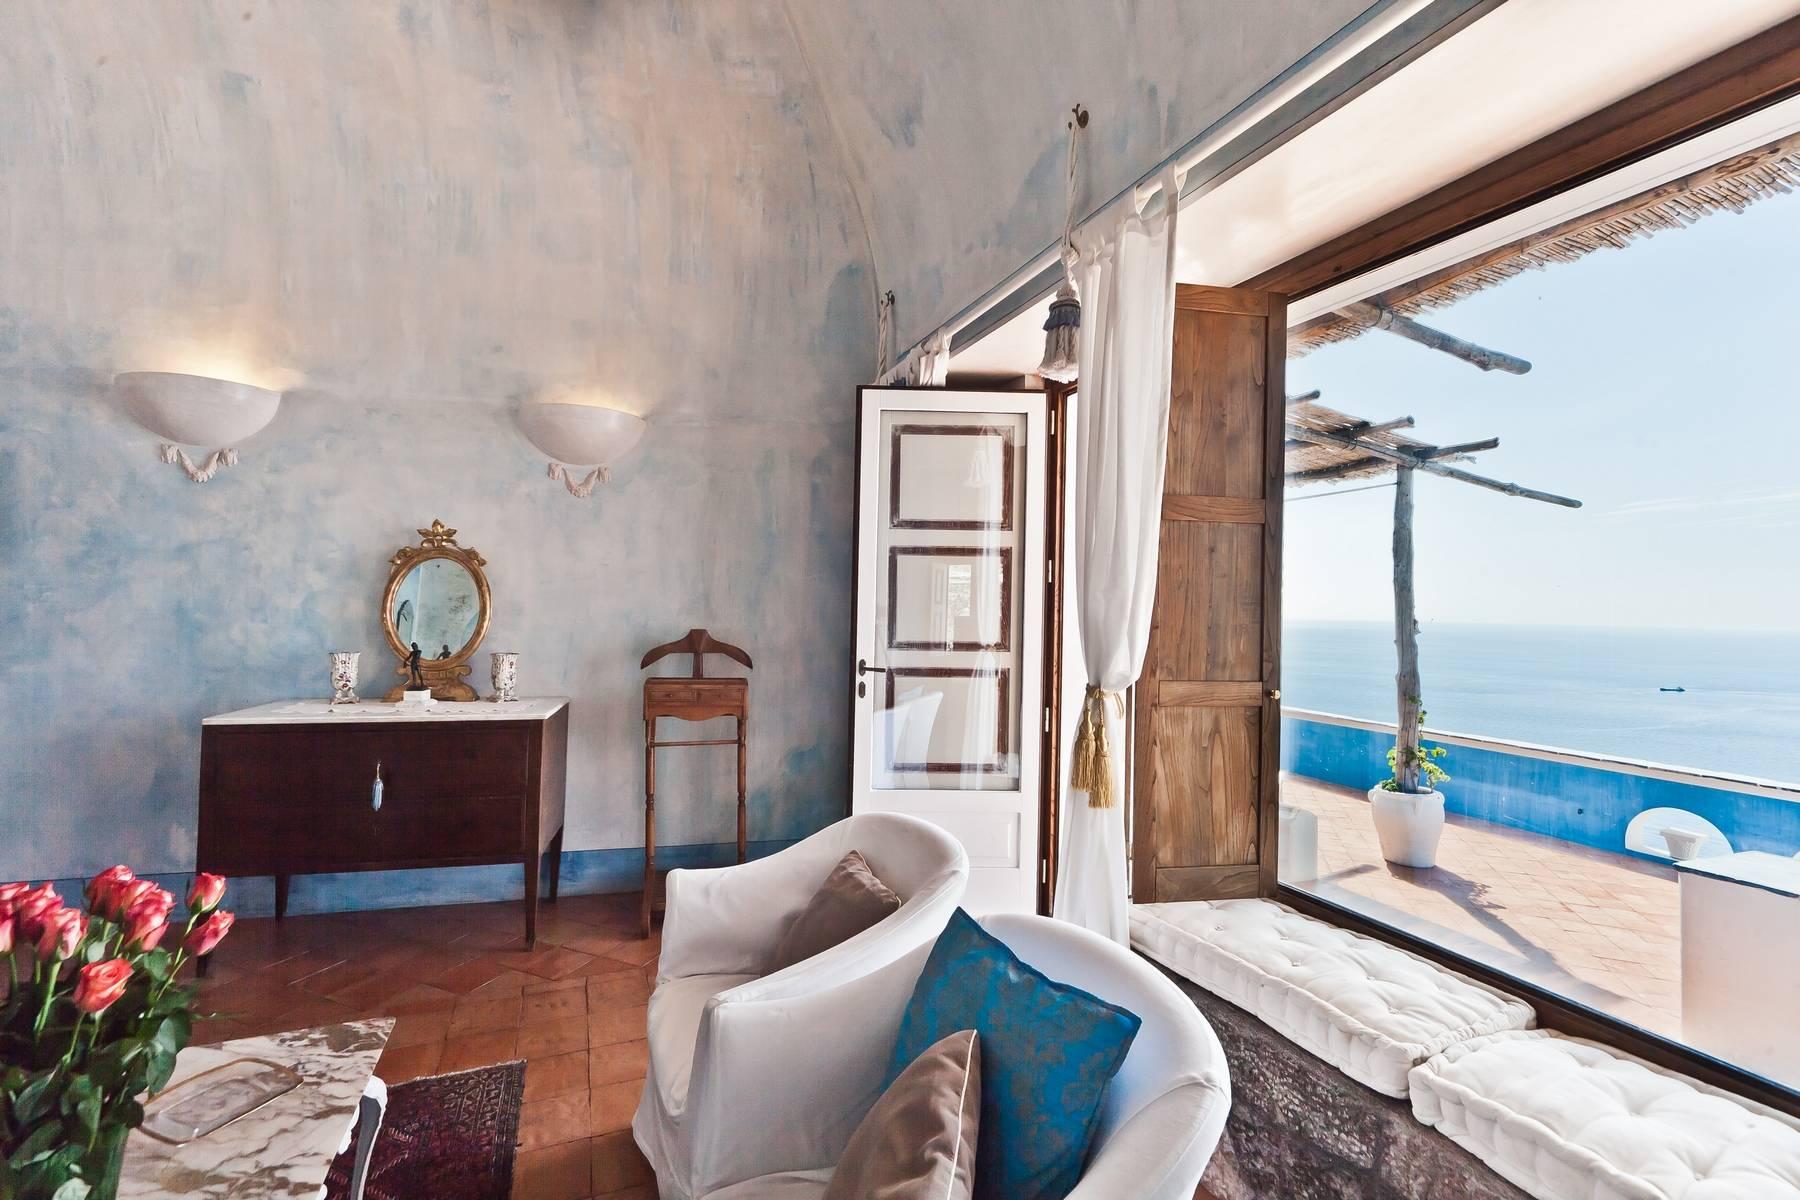 Una bellissima villa con vista sulla Costiera Amalfitana - 3